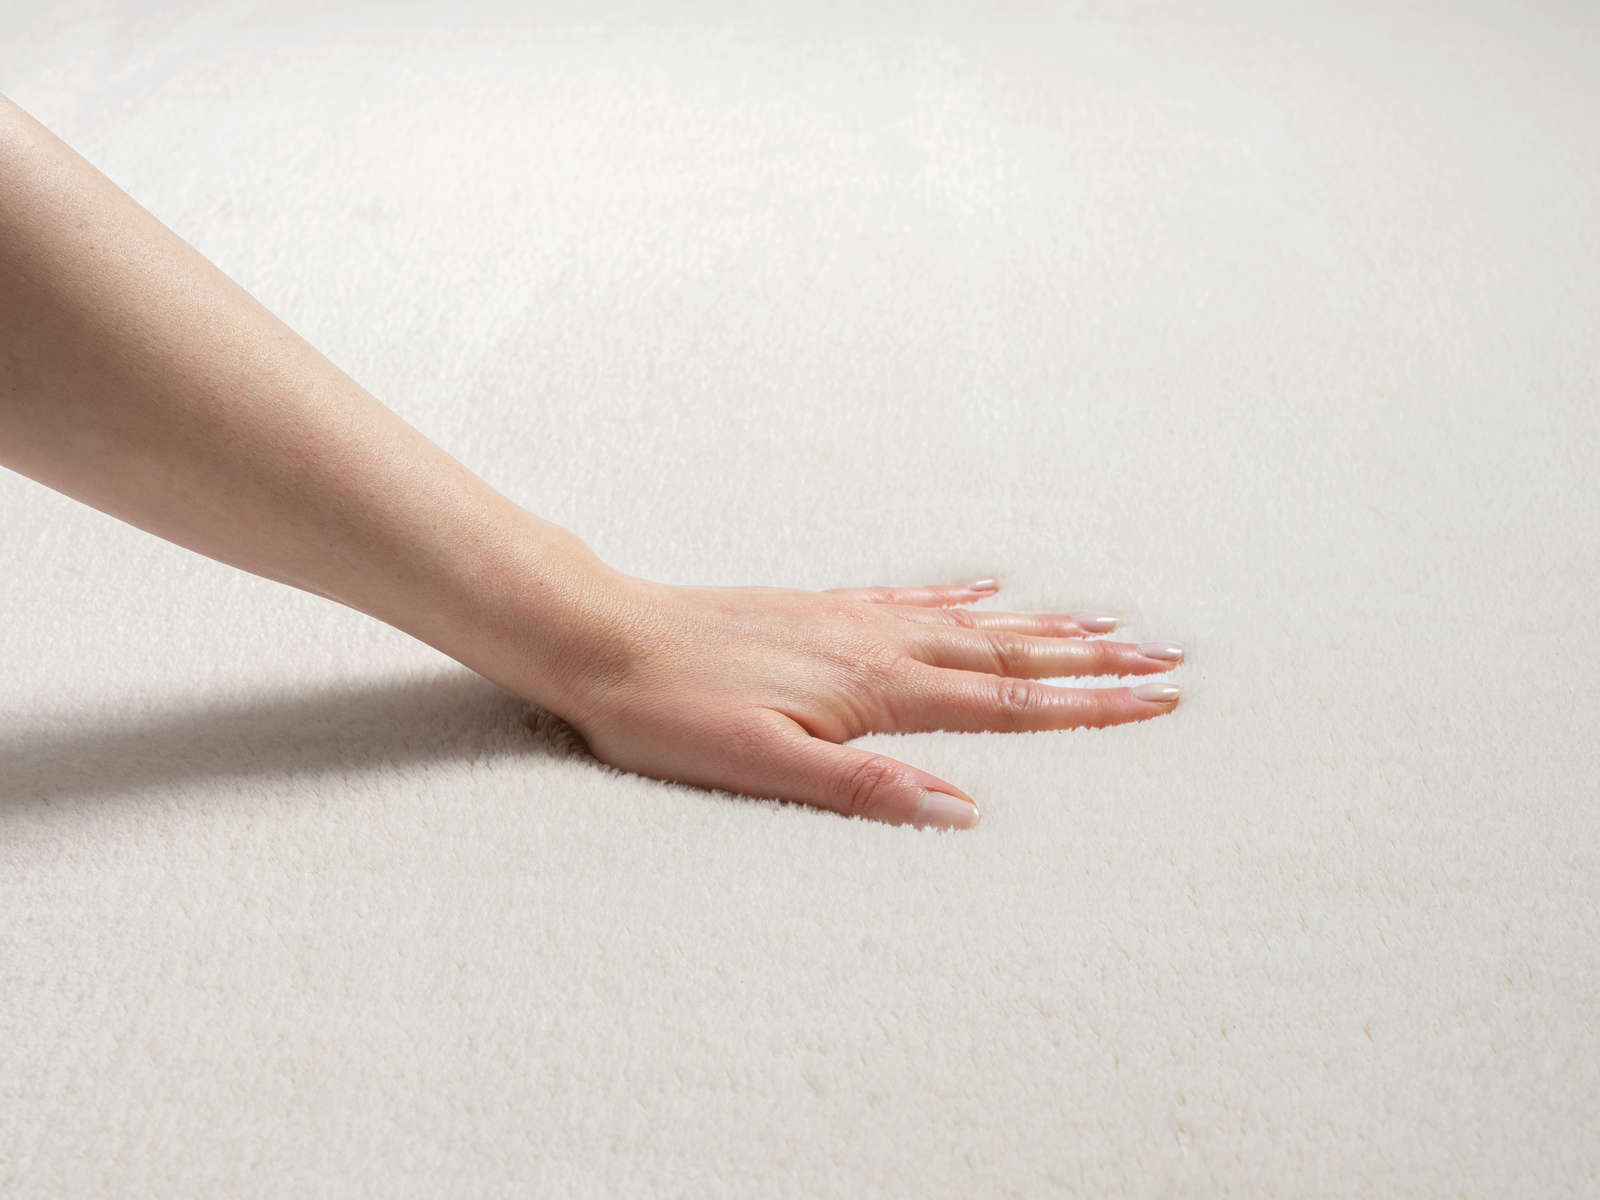             Modischer Hochflor Teppich in Creme – 150 x 80 cm
        